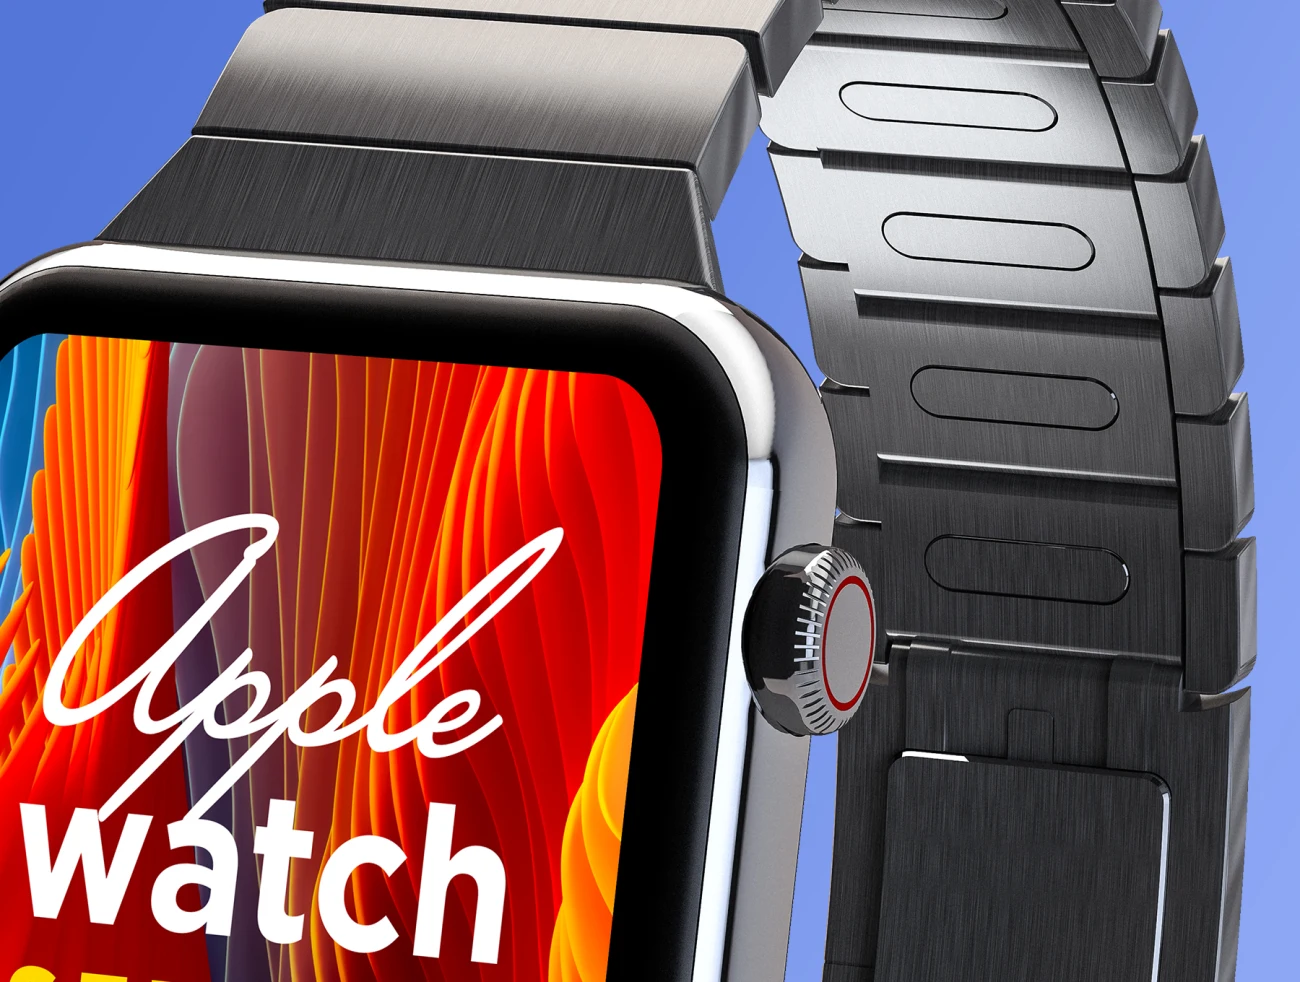 Apple Watch Series 4 Mockup 02 苹果手表4代智能样机-产品展示、手表样机、样机、简约样机、苹果设备-到位啦UI